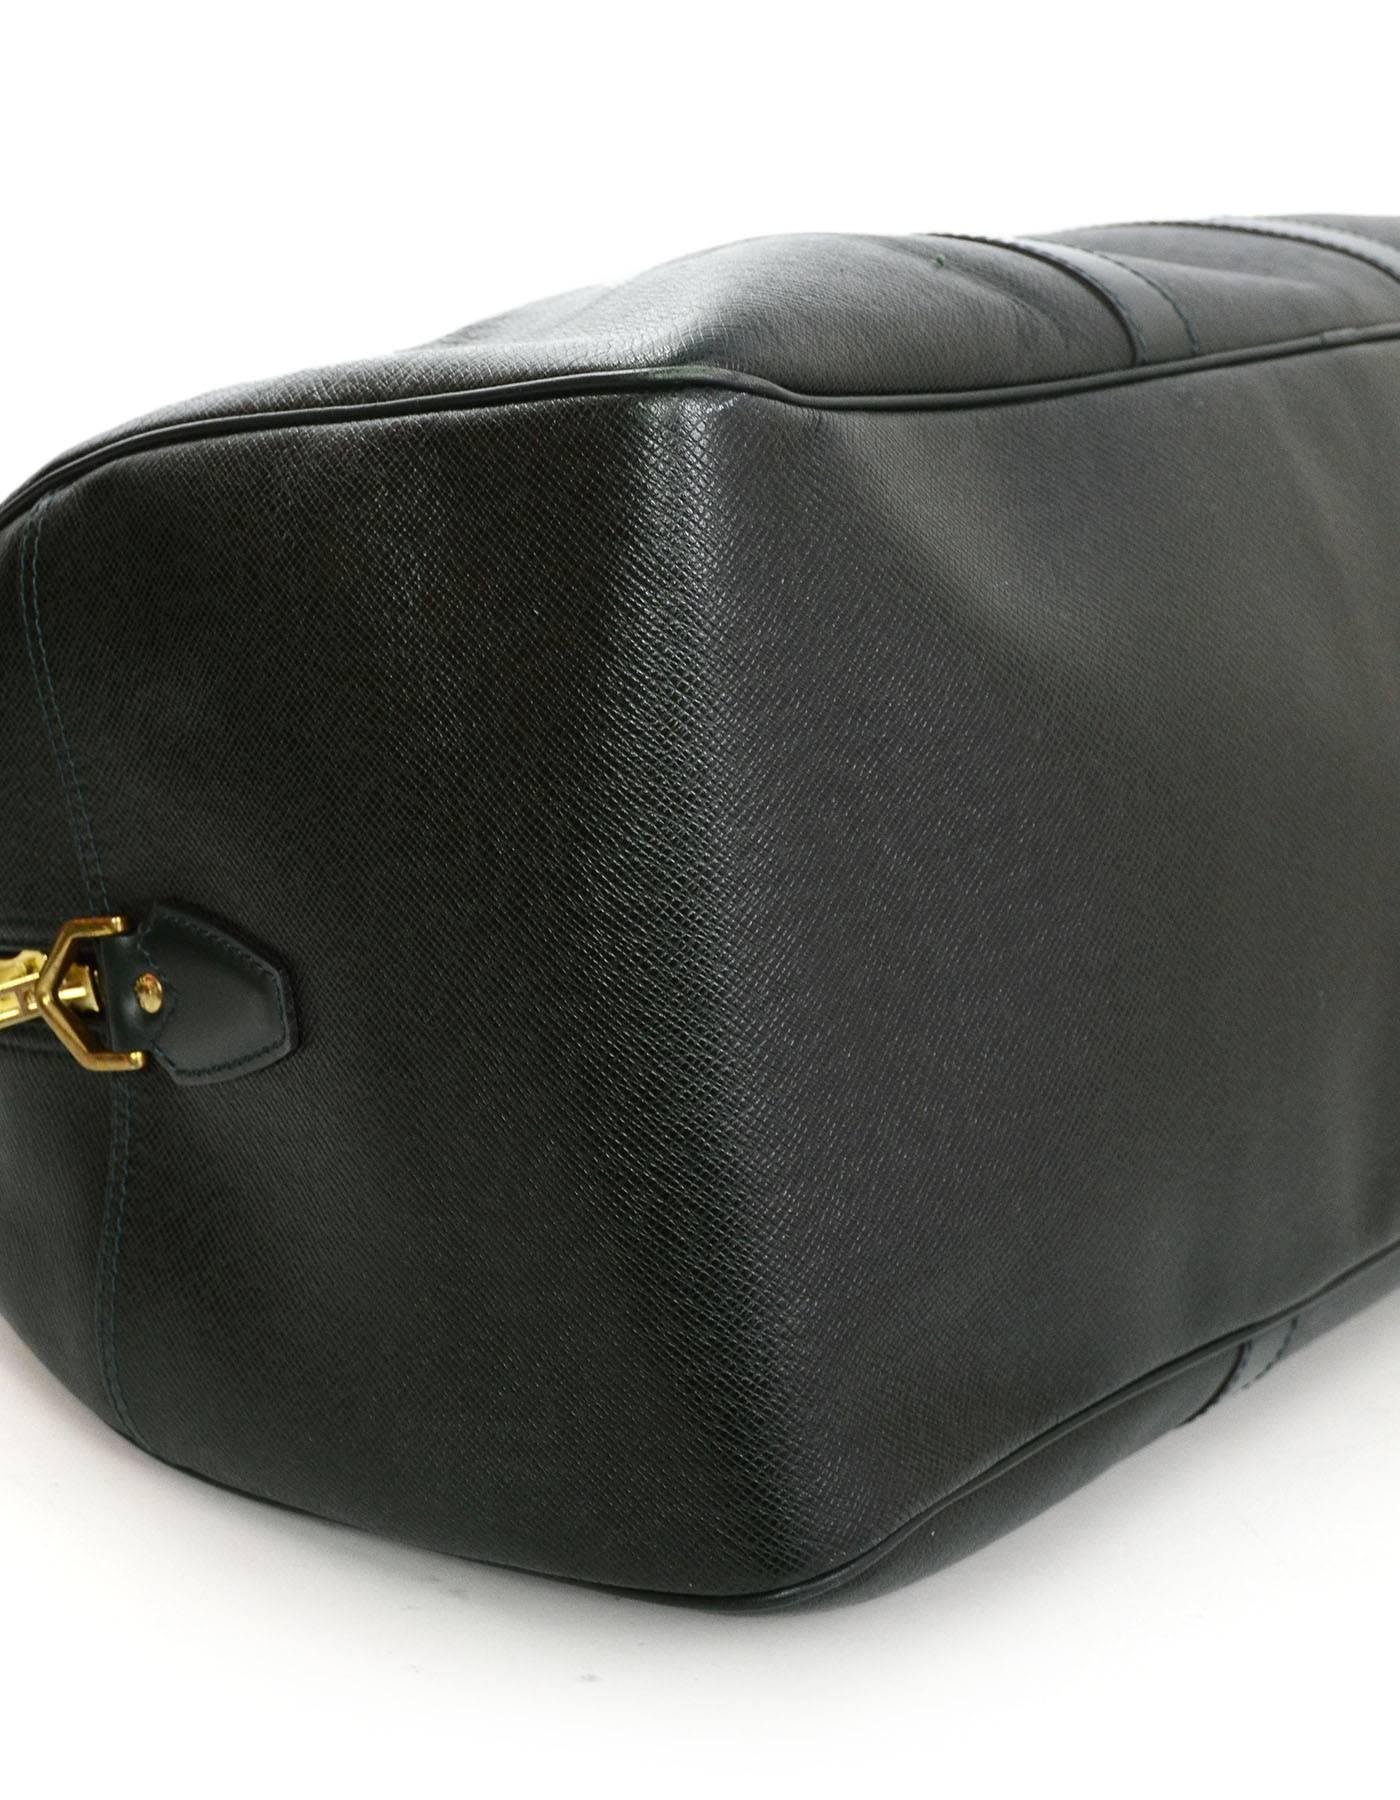 Black Louis Vuitton Green Taiga Leather Large Bowler Duffle Weekender Bag